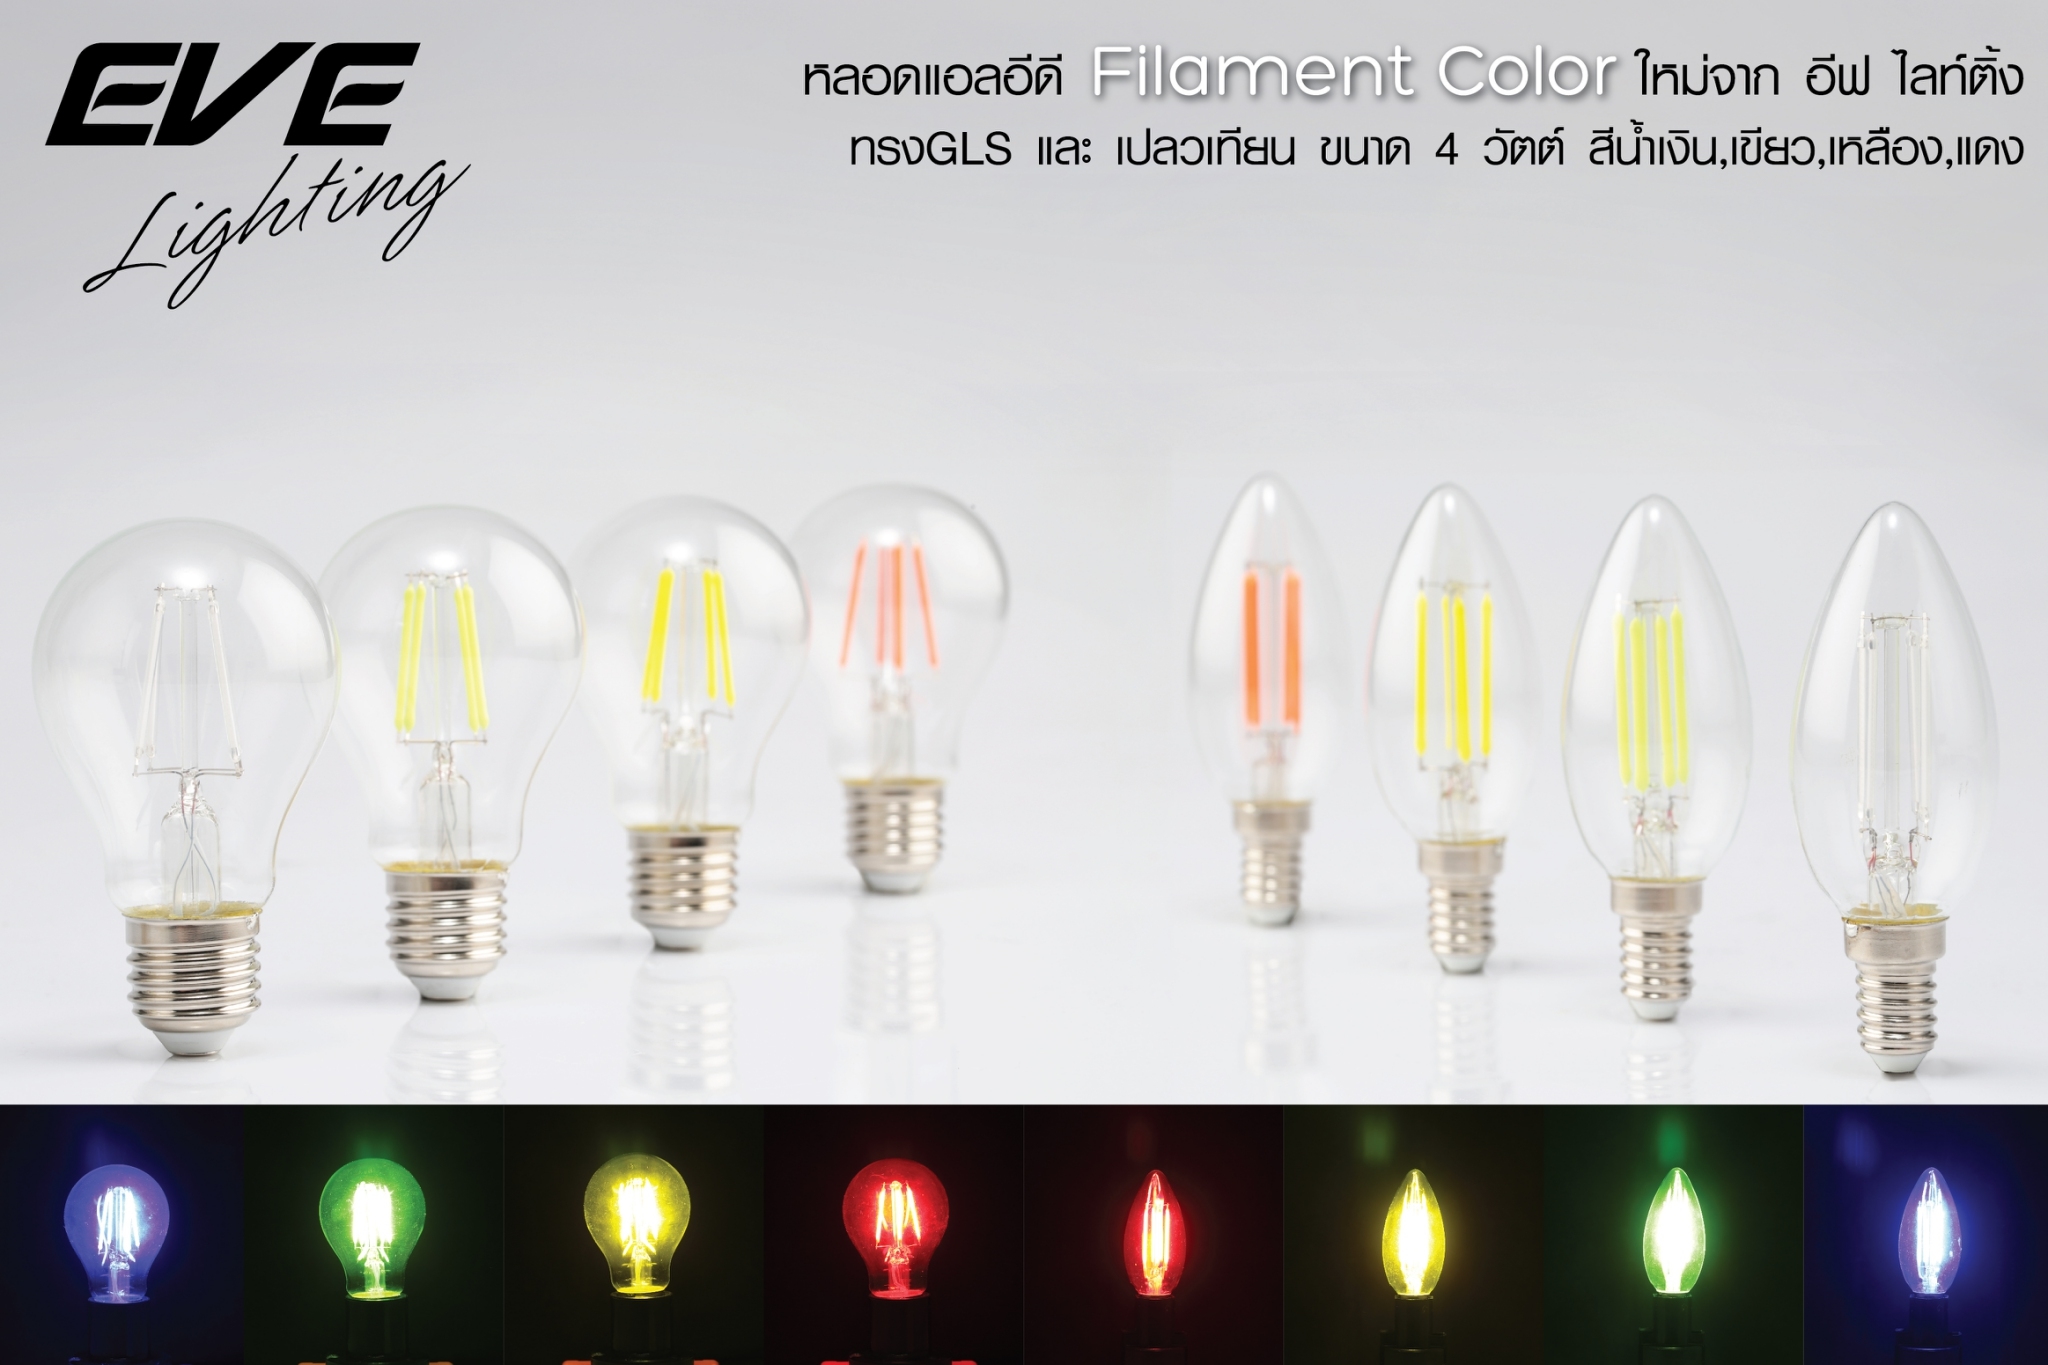 LED Filament Color หลอดแอลอีดี ฟิลาเมนต์ ขนาด 4 วัตต์ สีน้ำเงิน สีเหลือง สีเขียว สีแดง ขั้วE14 และ E27